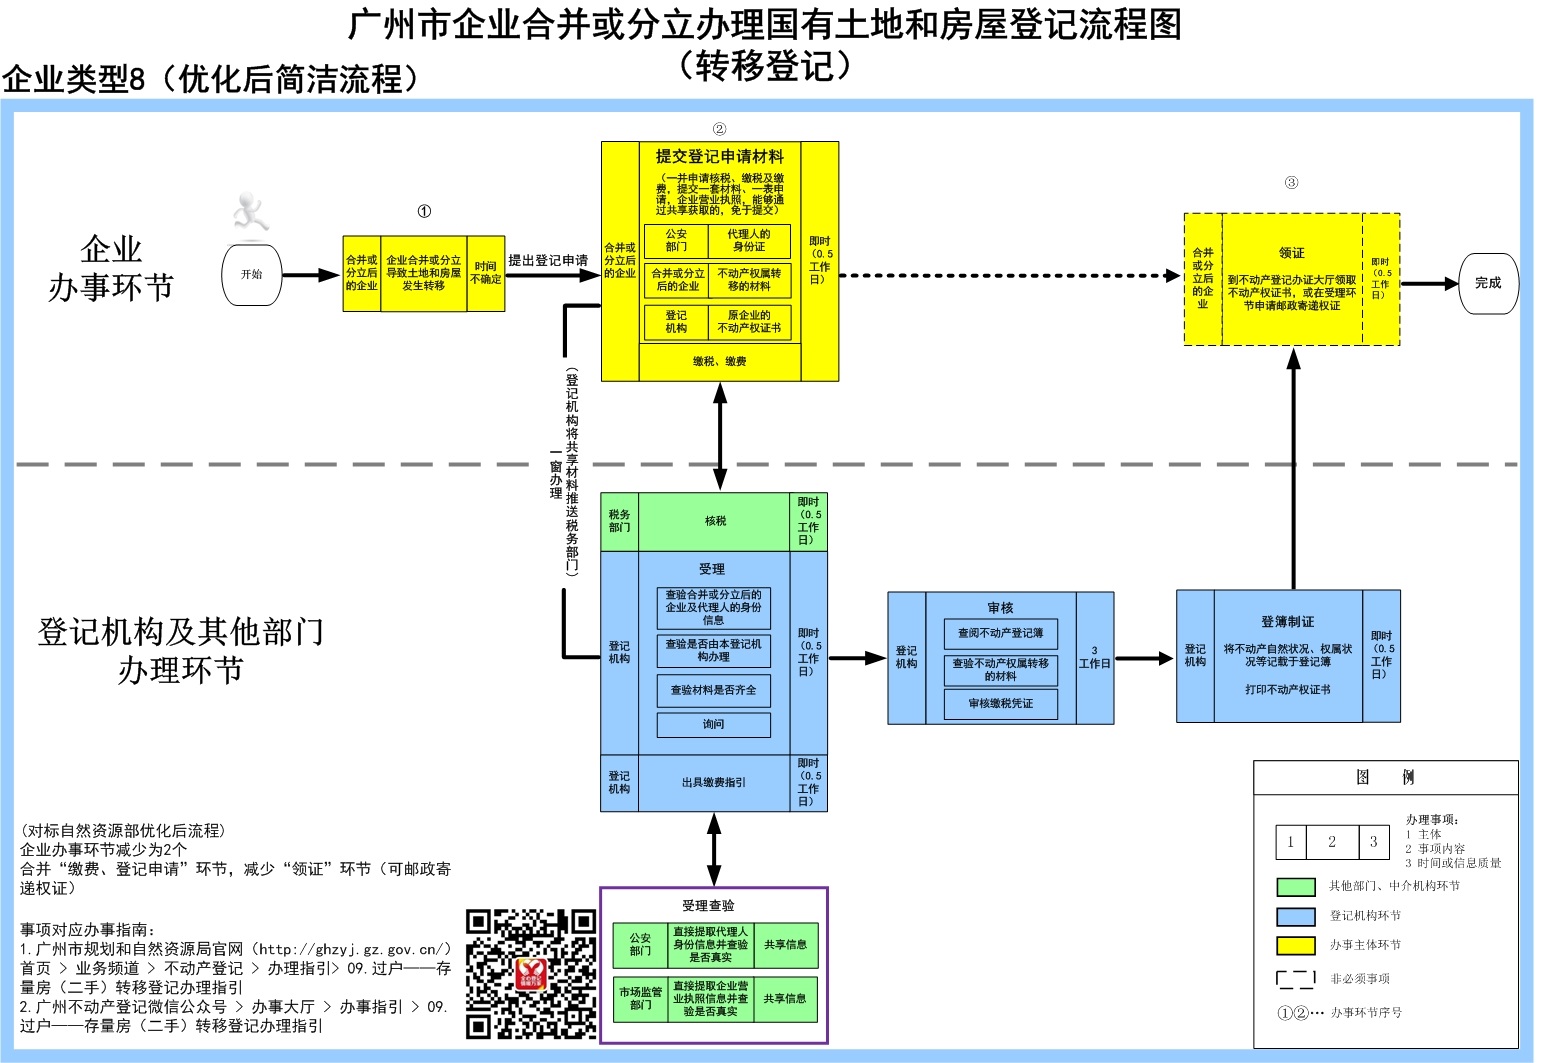 8企业合并或分立办理国有土地和房屋登记流程图（转移登记）-广州市.jpg